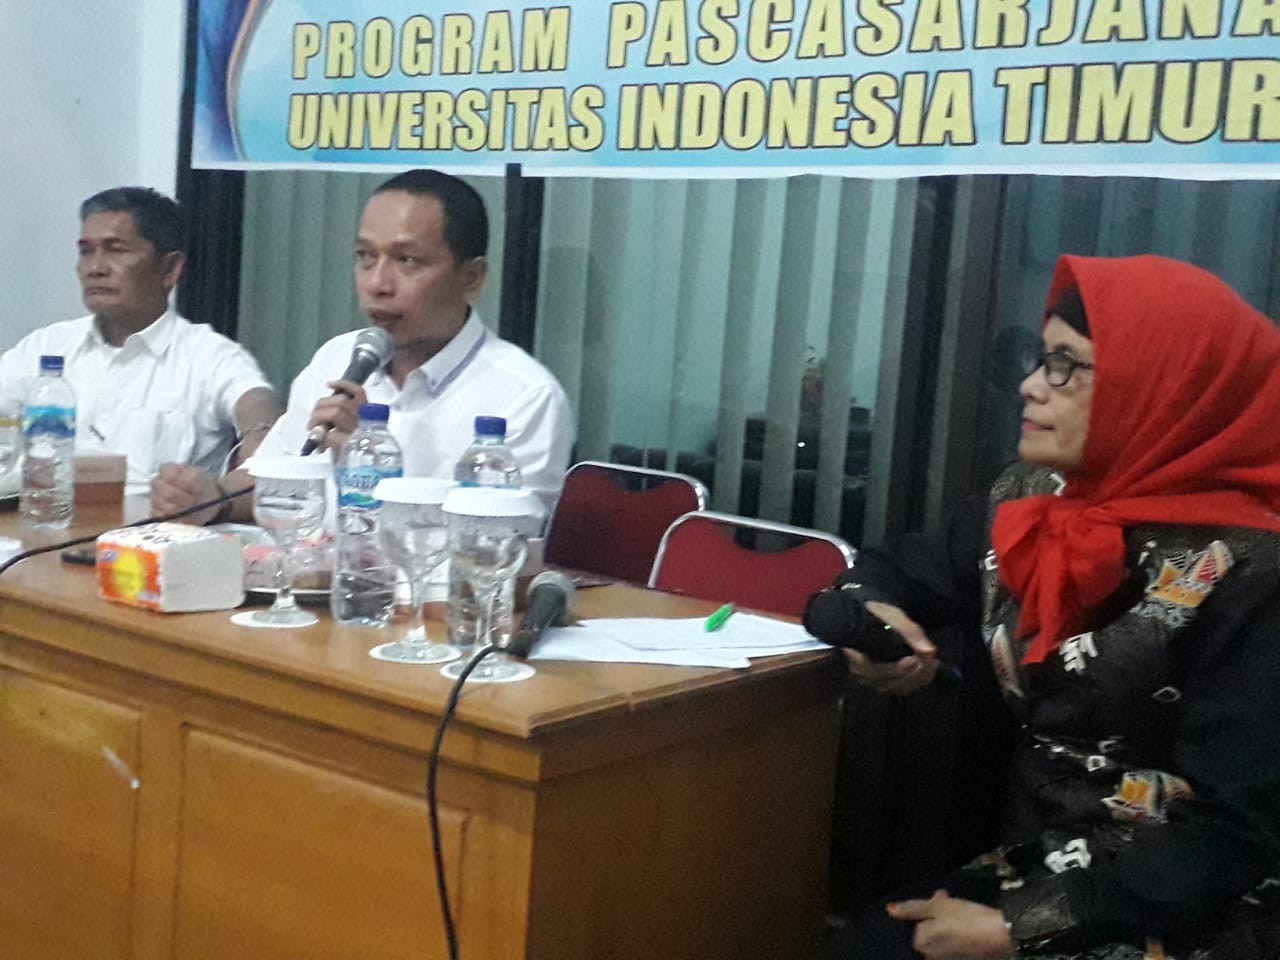 Pascasarjana UIT Dialog Kebangsaan Bersama RRI Makassar